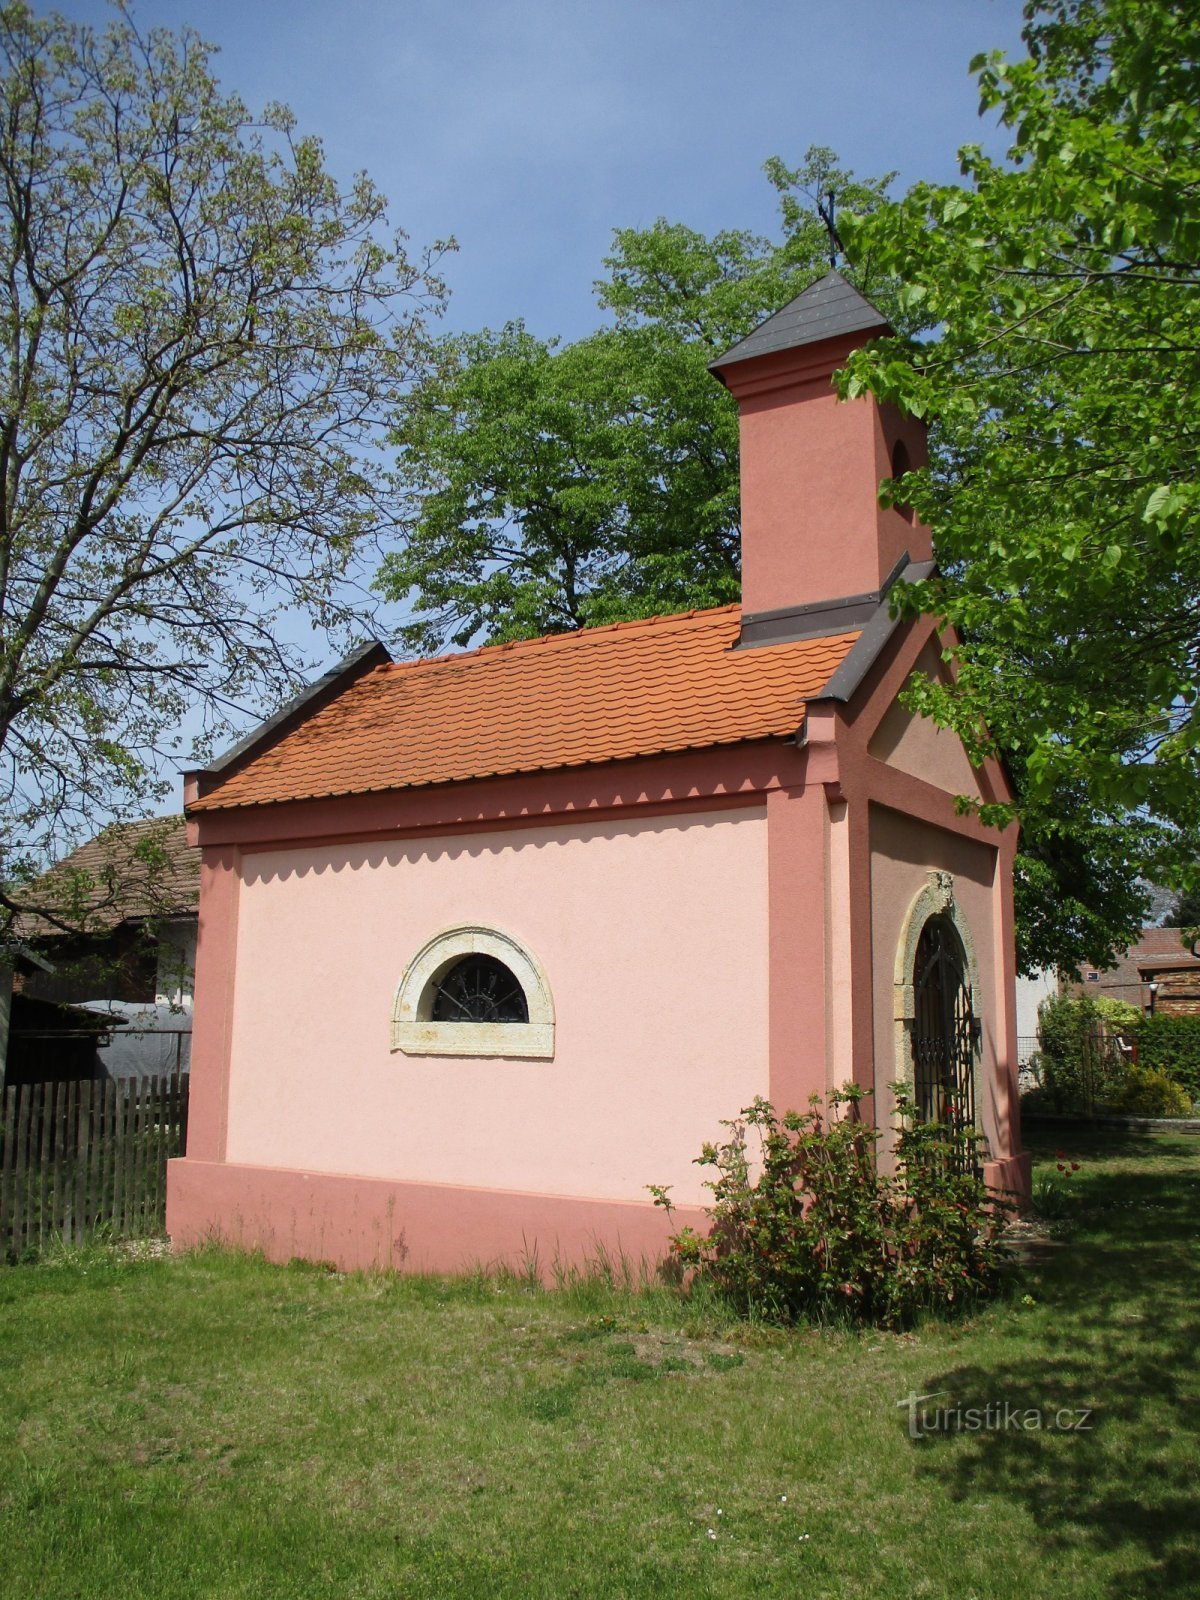 教堂（Kunčice，8.5.2020 年 XNUMX 月 XNUMX 日）